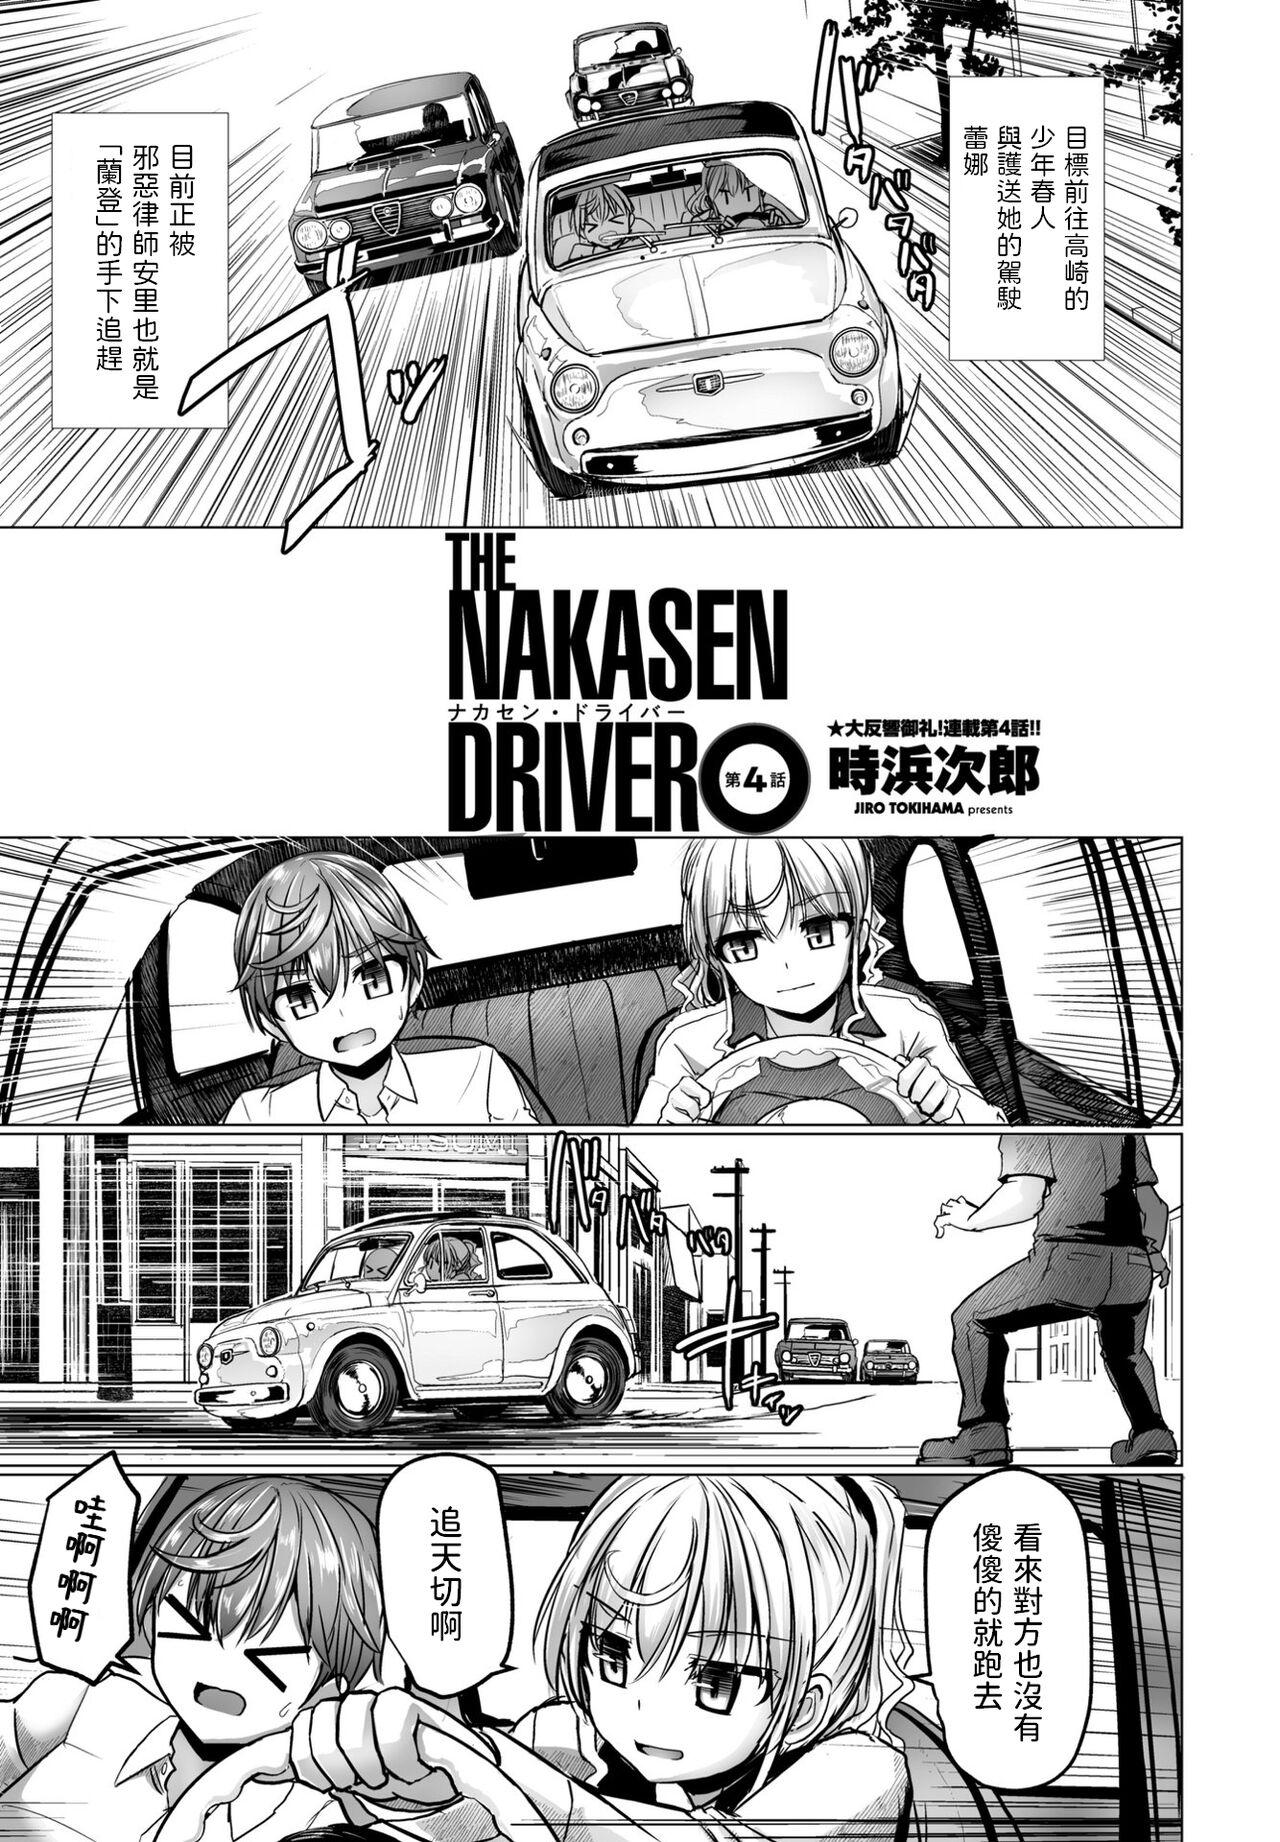 THE NAKASEN DRIVER Ch. 4 0